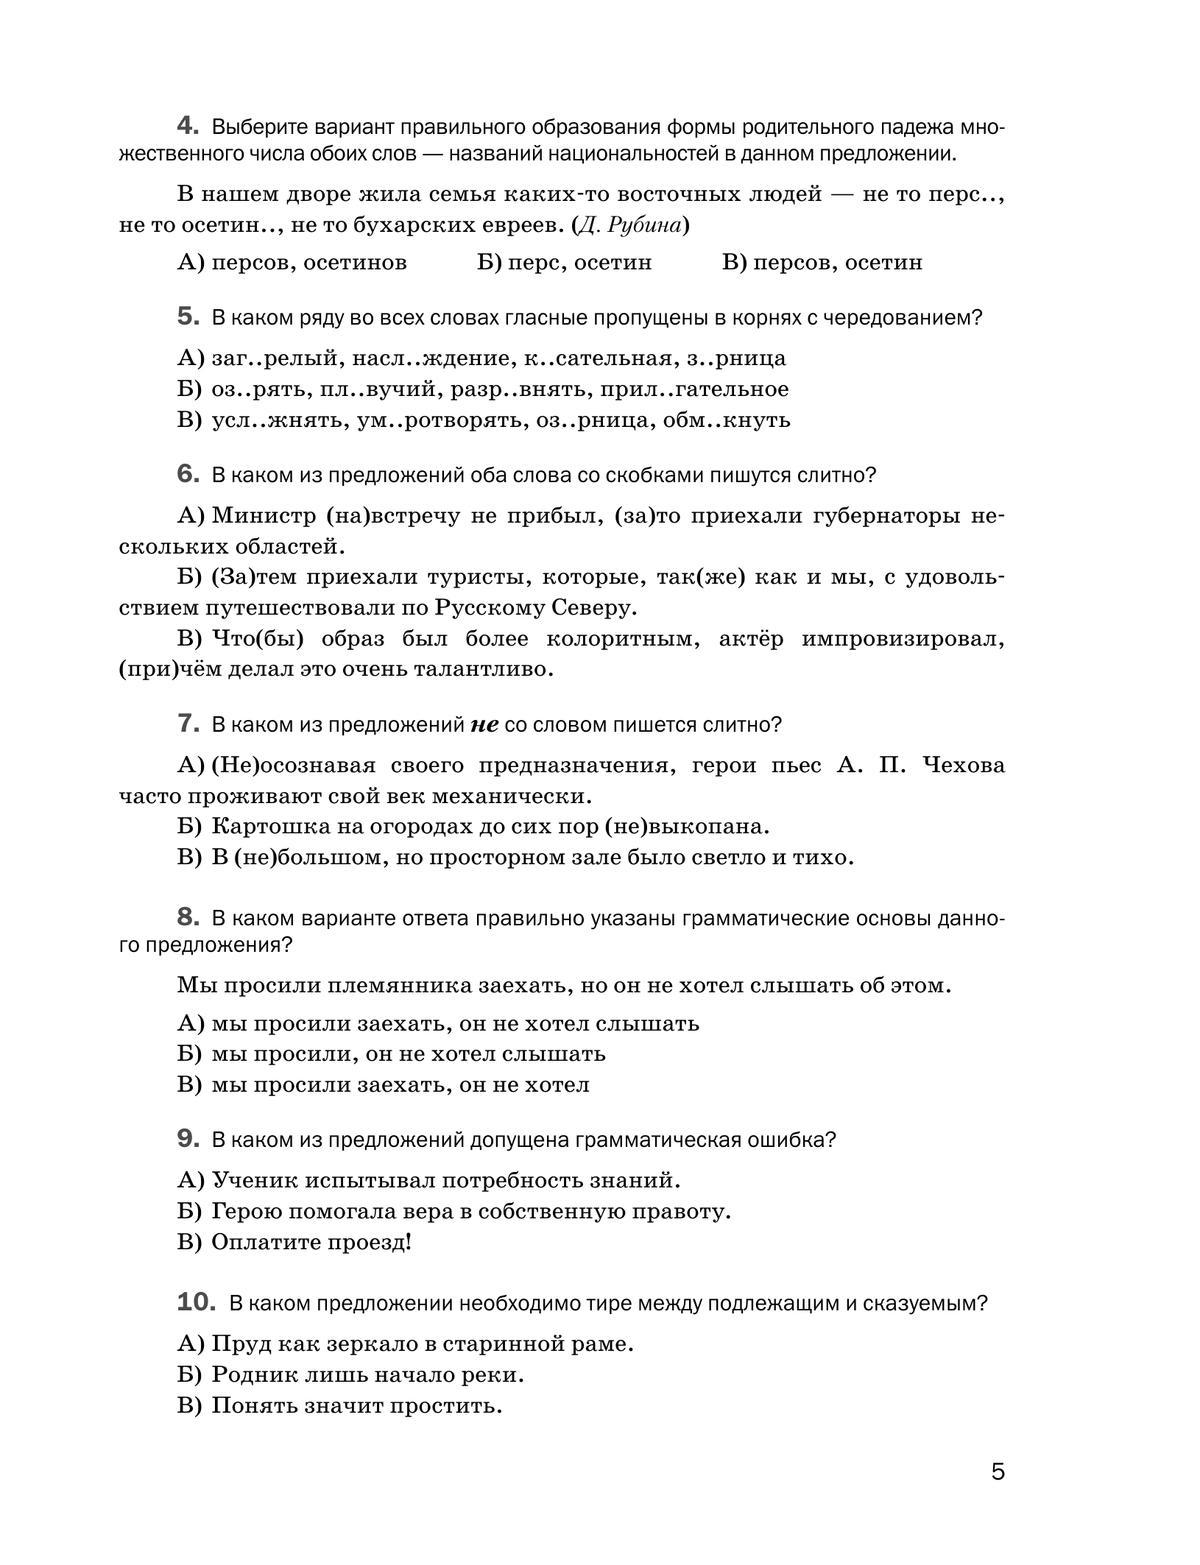 Русский язык. Контрольные и проверочные работы. 8 класс 2